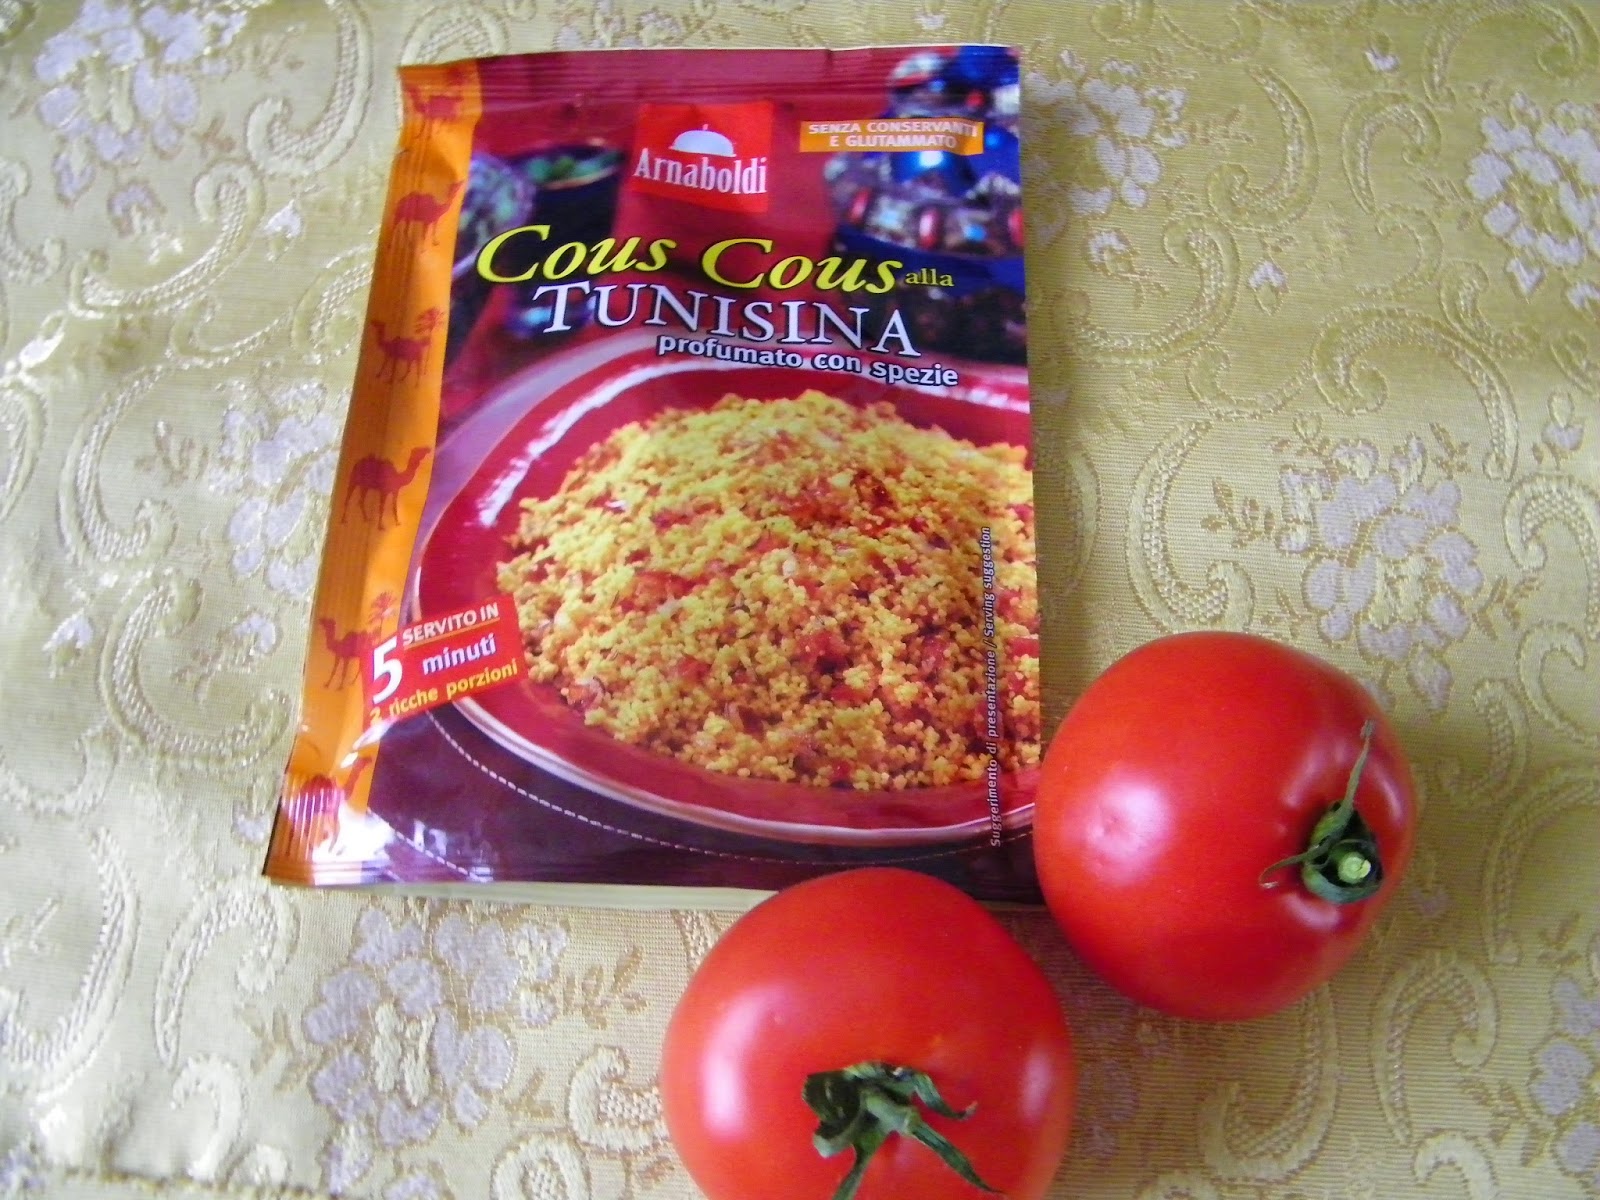  ,pomodori ripieni di  cous cous alla tunisina arnaboldi